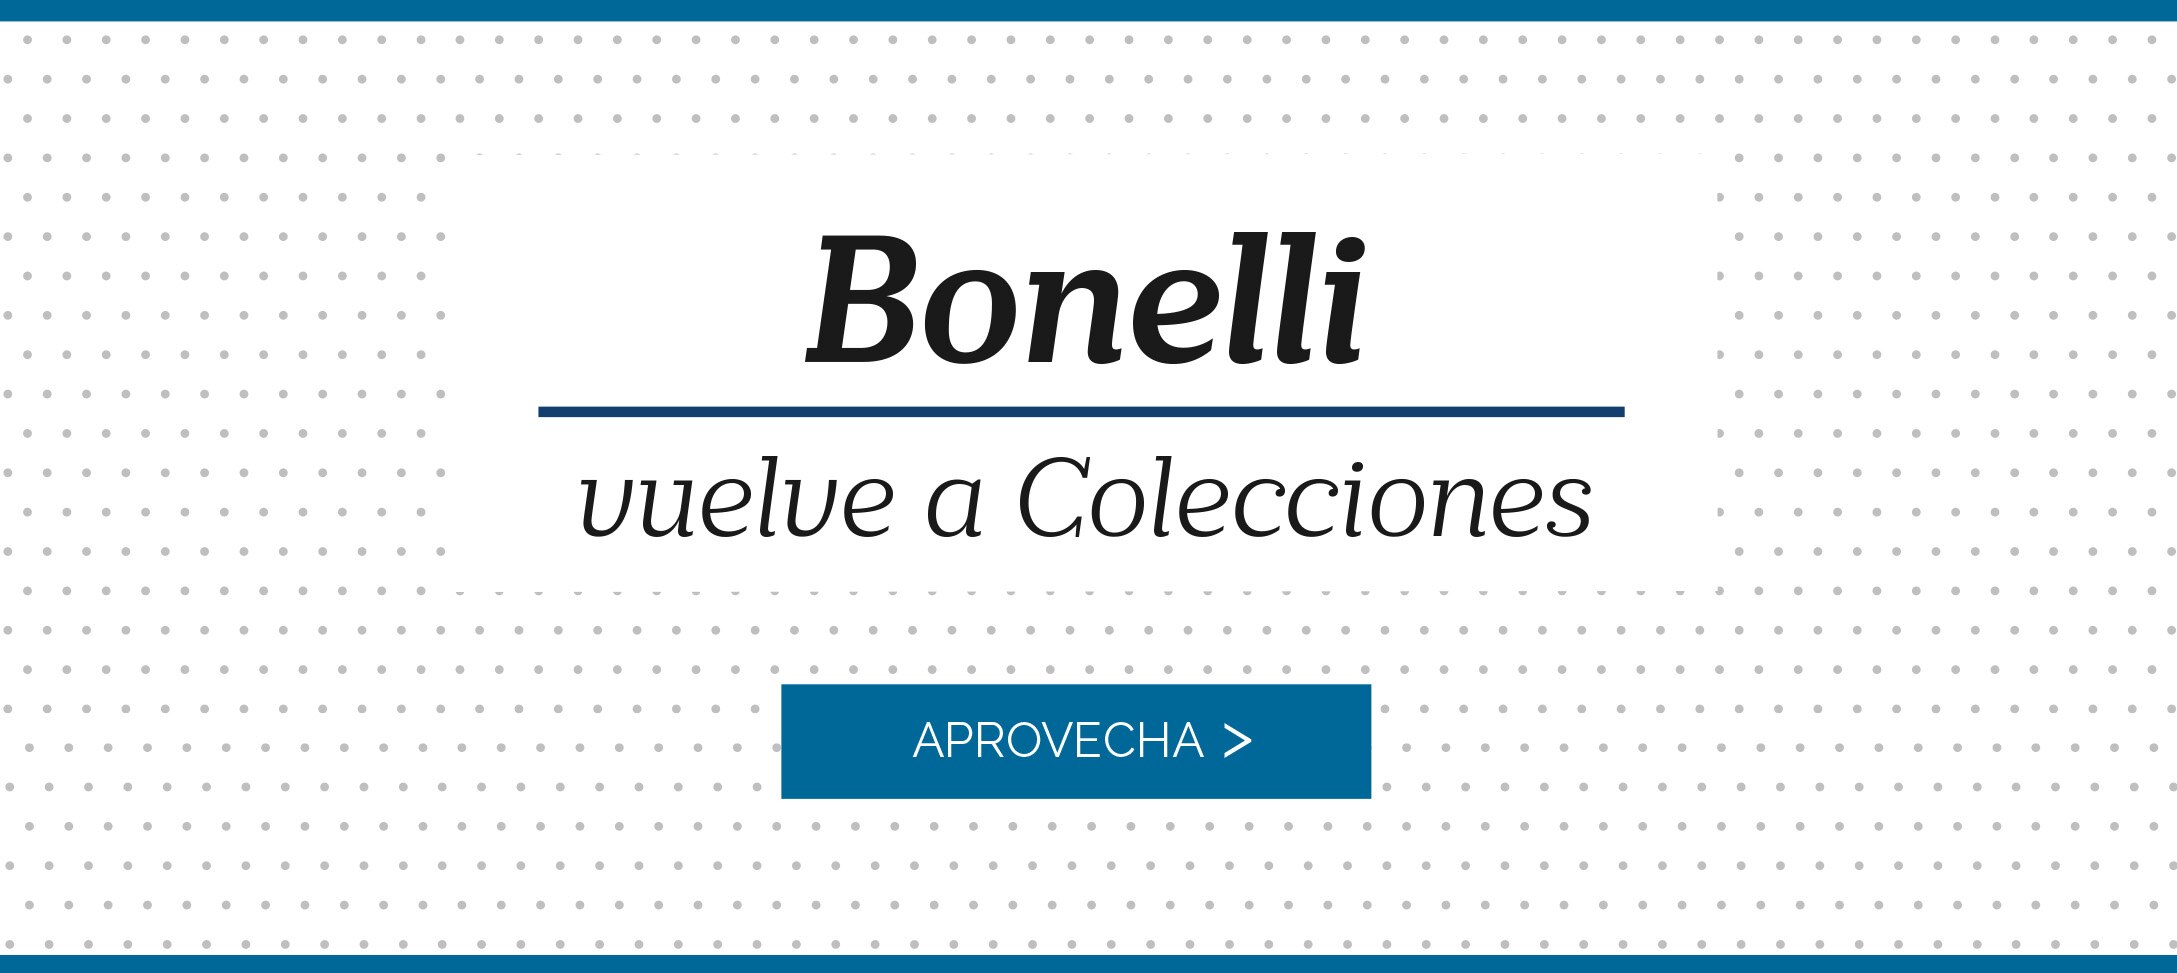 Bonelli vuelve a Colecciones